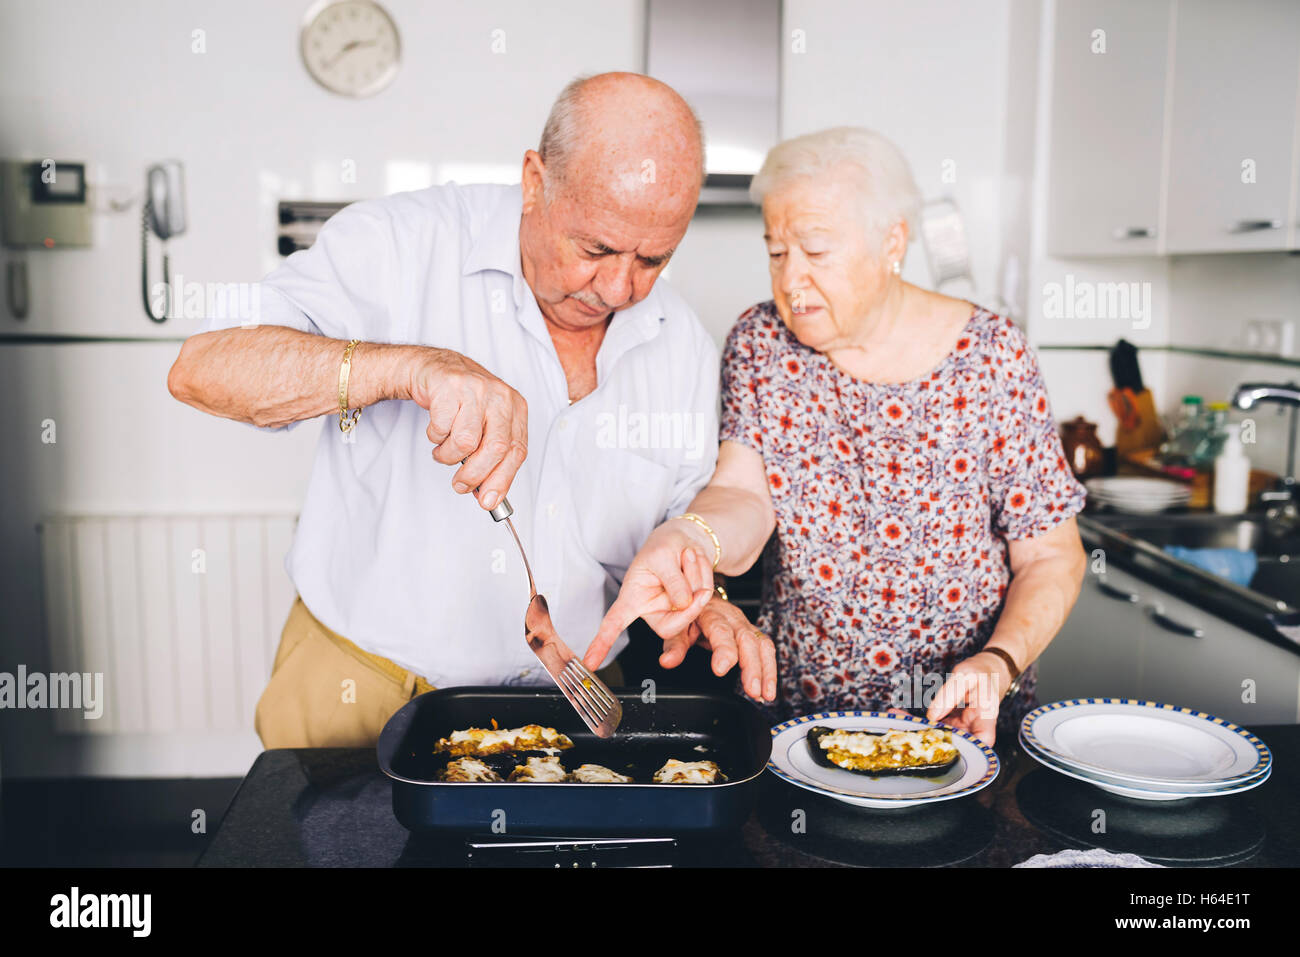 Senior couple servant dans la cuisine des aubergines farcies Banque D'Images